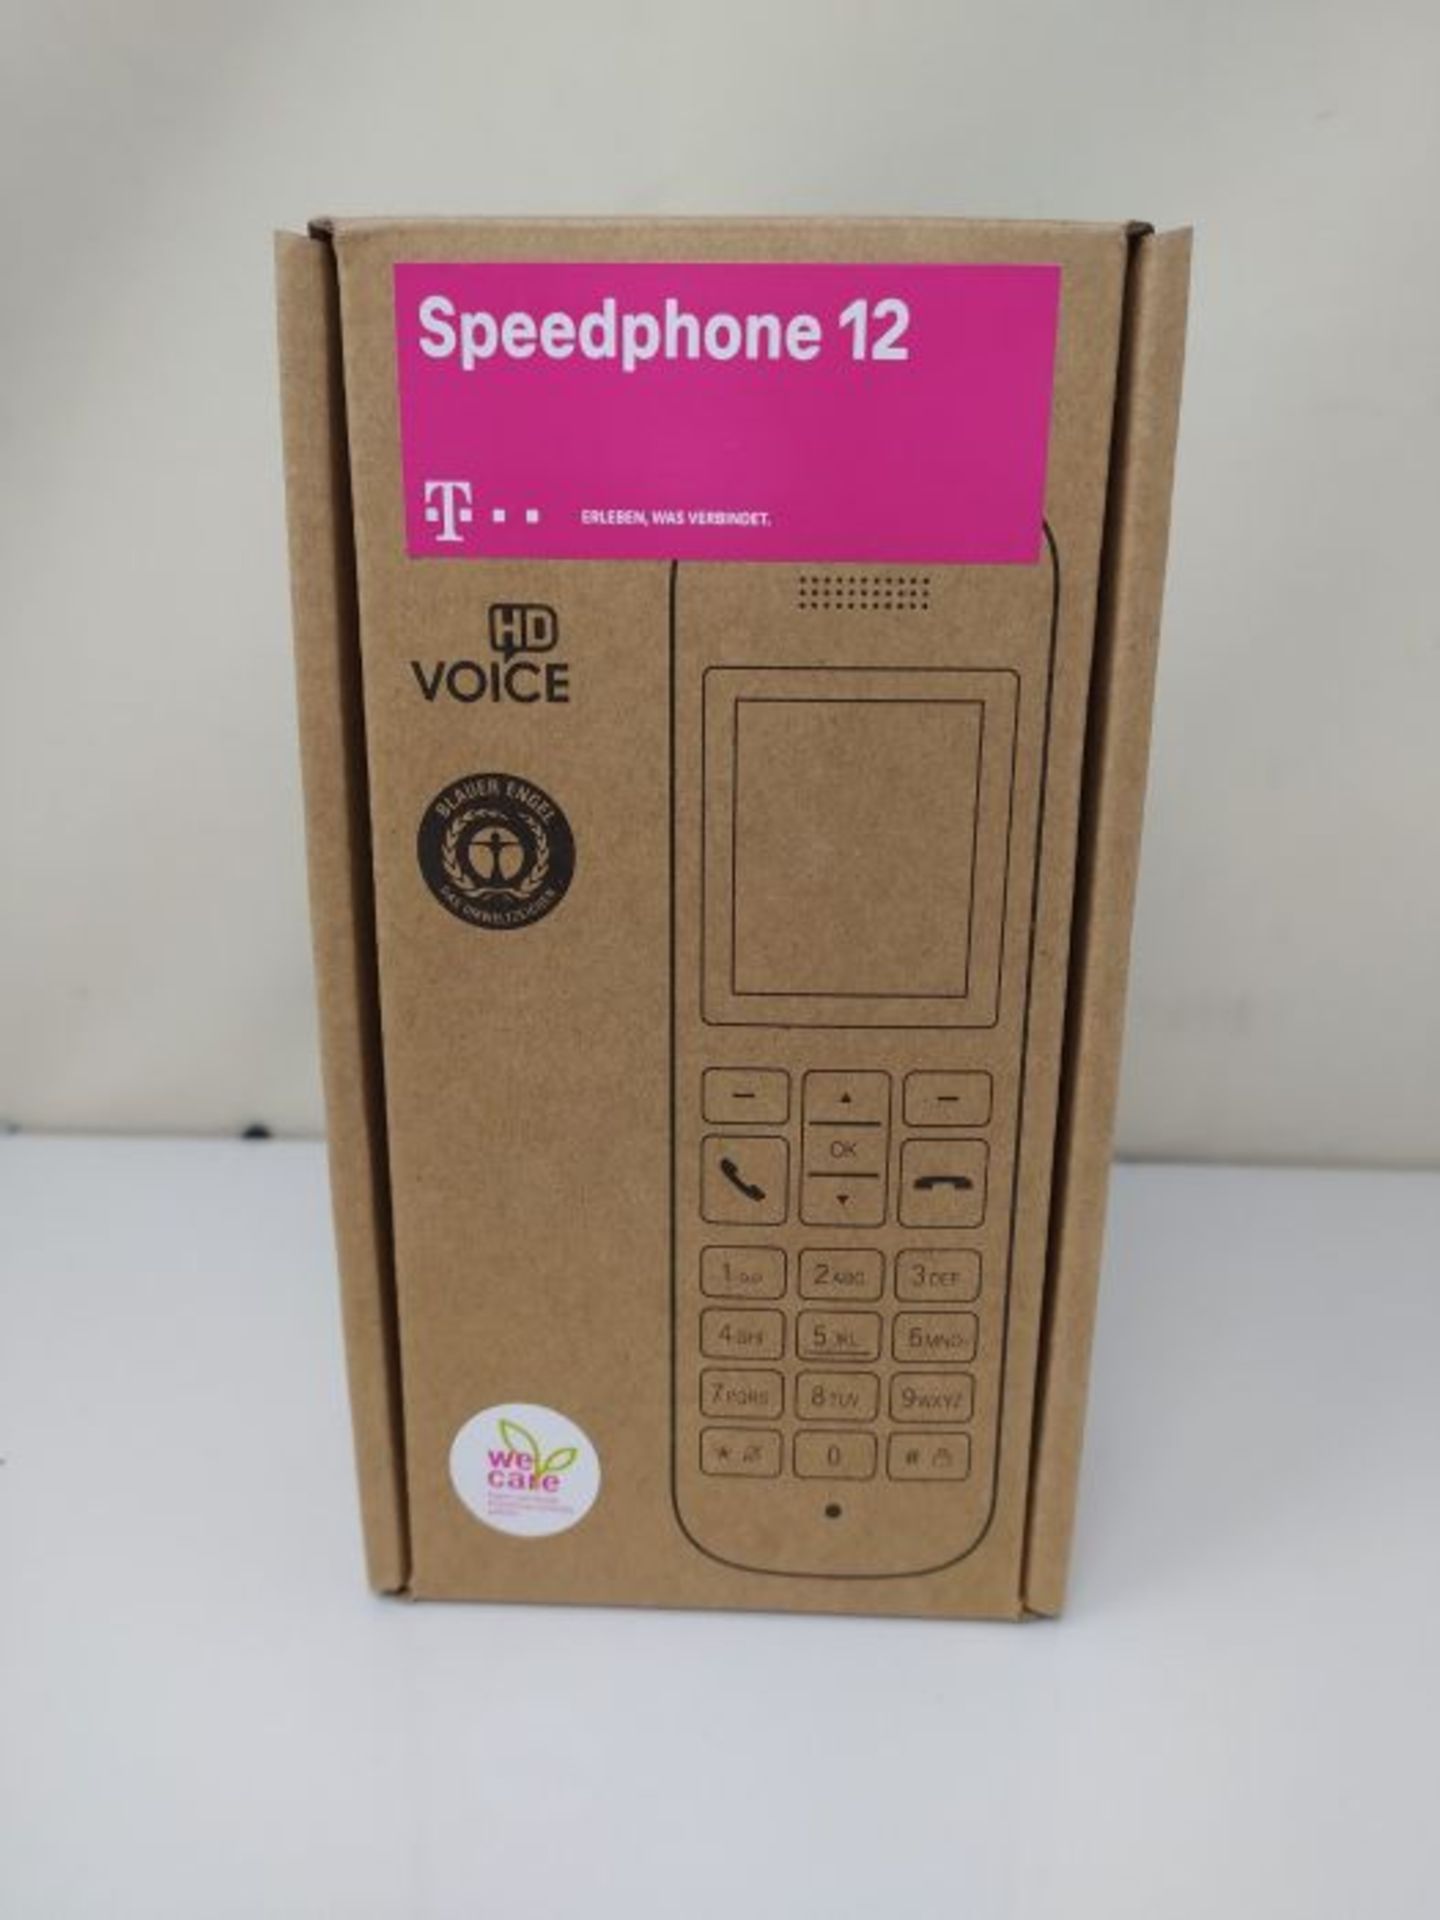 Telekom Speedphone 12 IP phone White Wireless handset TFT - Telekom Speedphone 12, Whi - Image 2 of 3